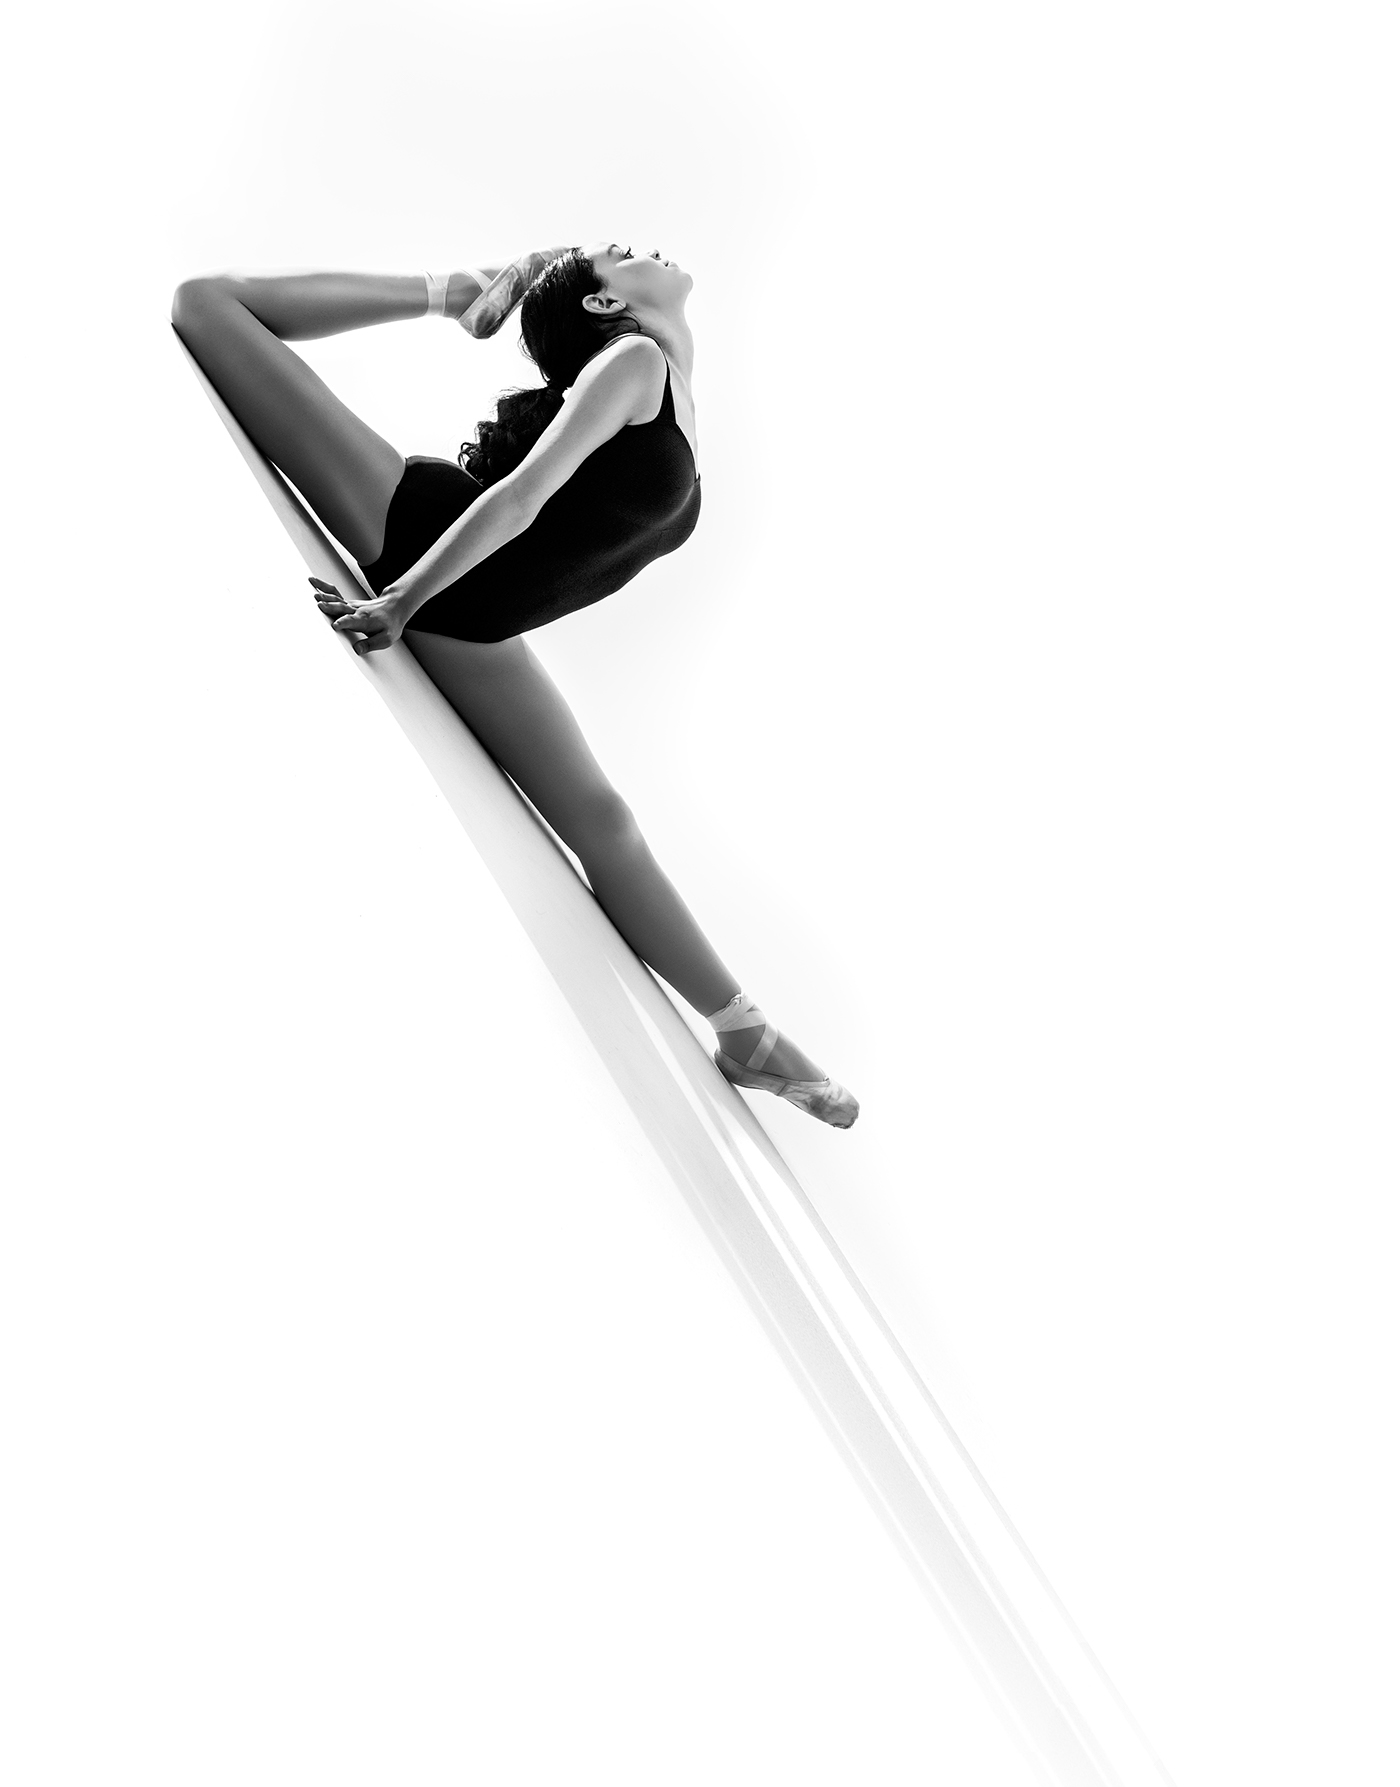 Daniella Rucker Kick Dance ballet dancer sccud thecreativeimagineers studio